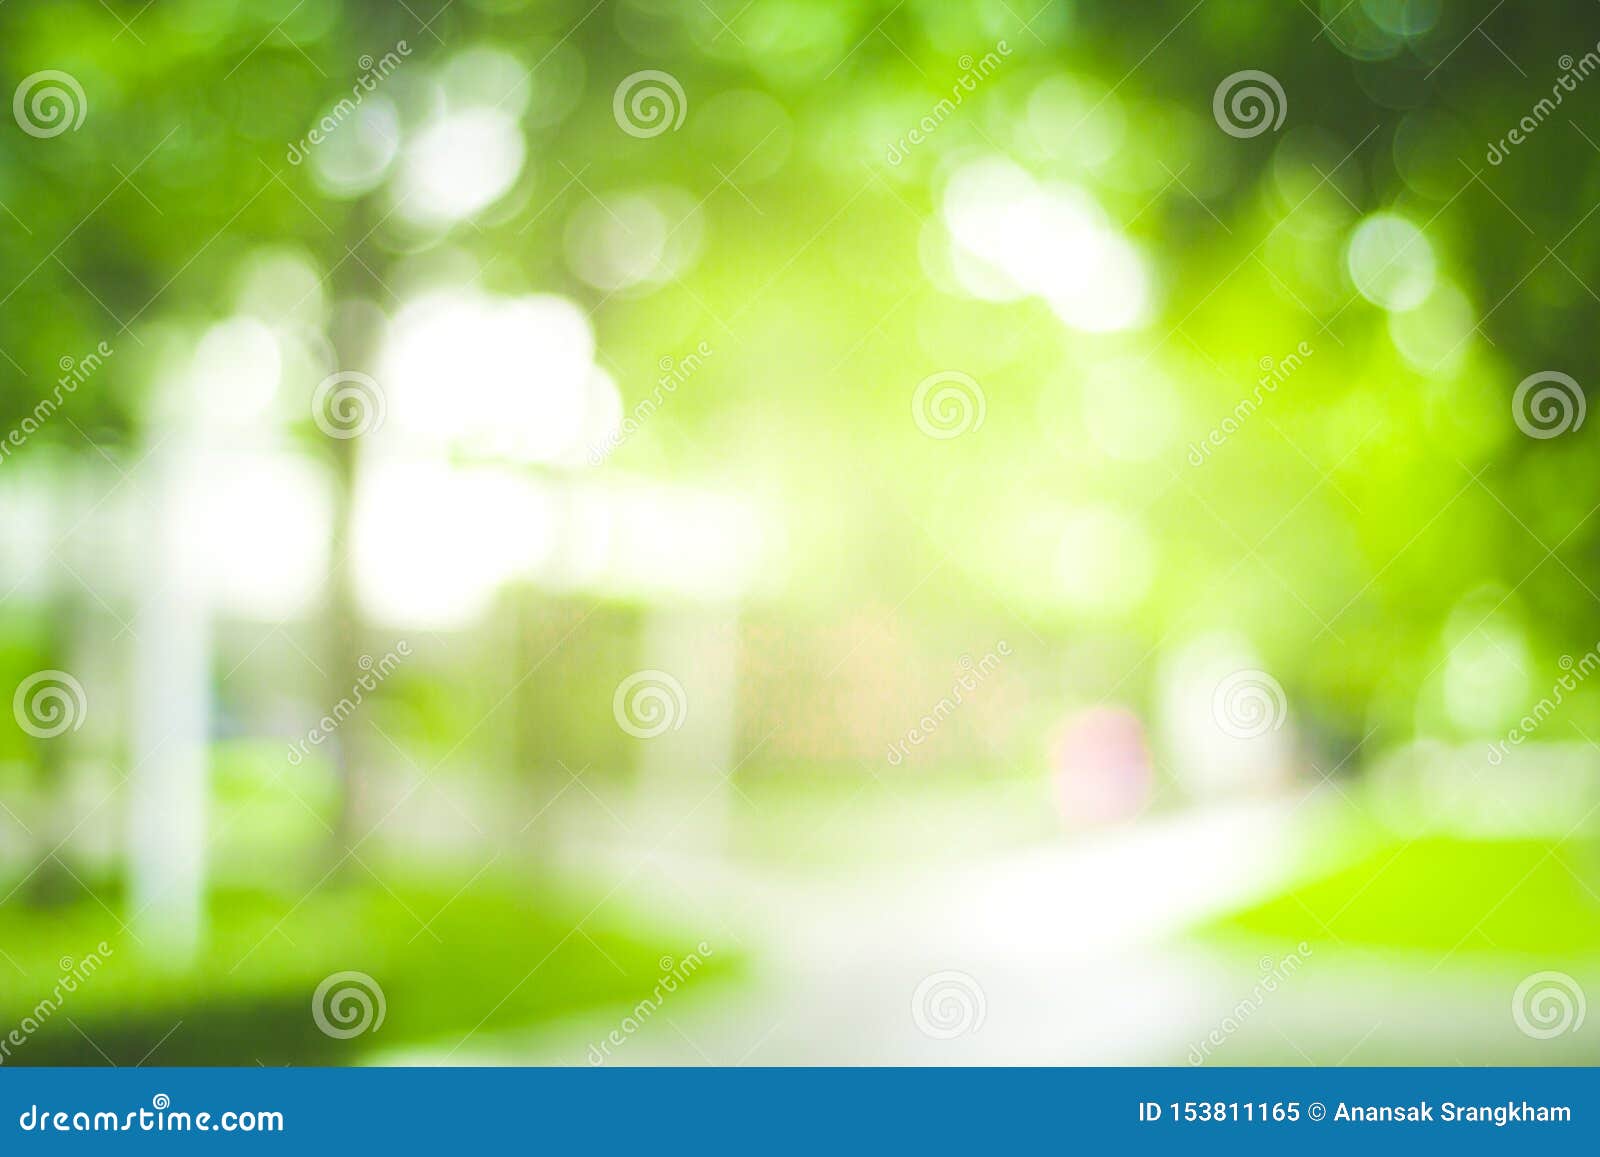 Tạo ra một không gian mộc mạc và nhẹ nhàng với hình nền Abstract Green Nature Blur Background and Sunlight Stock Image. Hình ảnh nền này sẽ mang lại cho bạn cảm giác thư thái và lan tỏa sự tươi mới vào các tác phẩm sáng tạo của bạn.